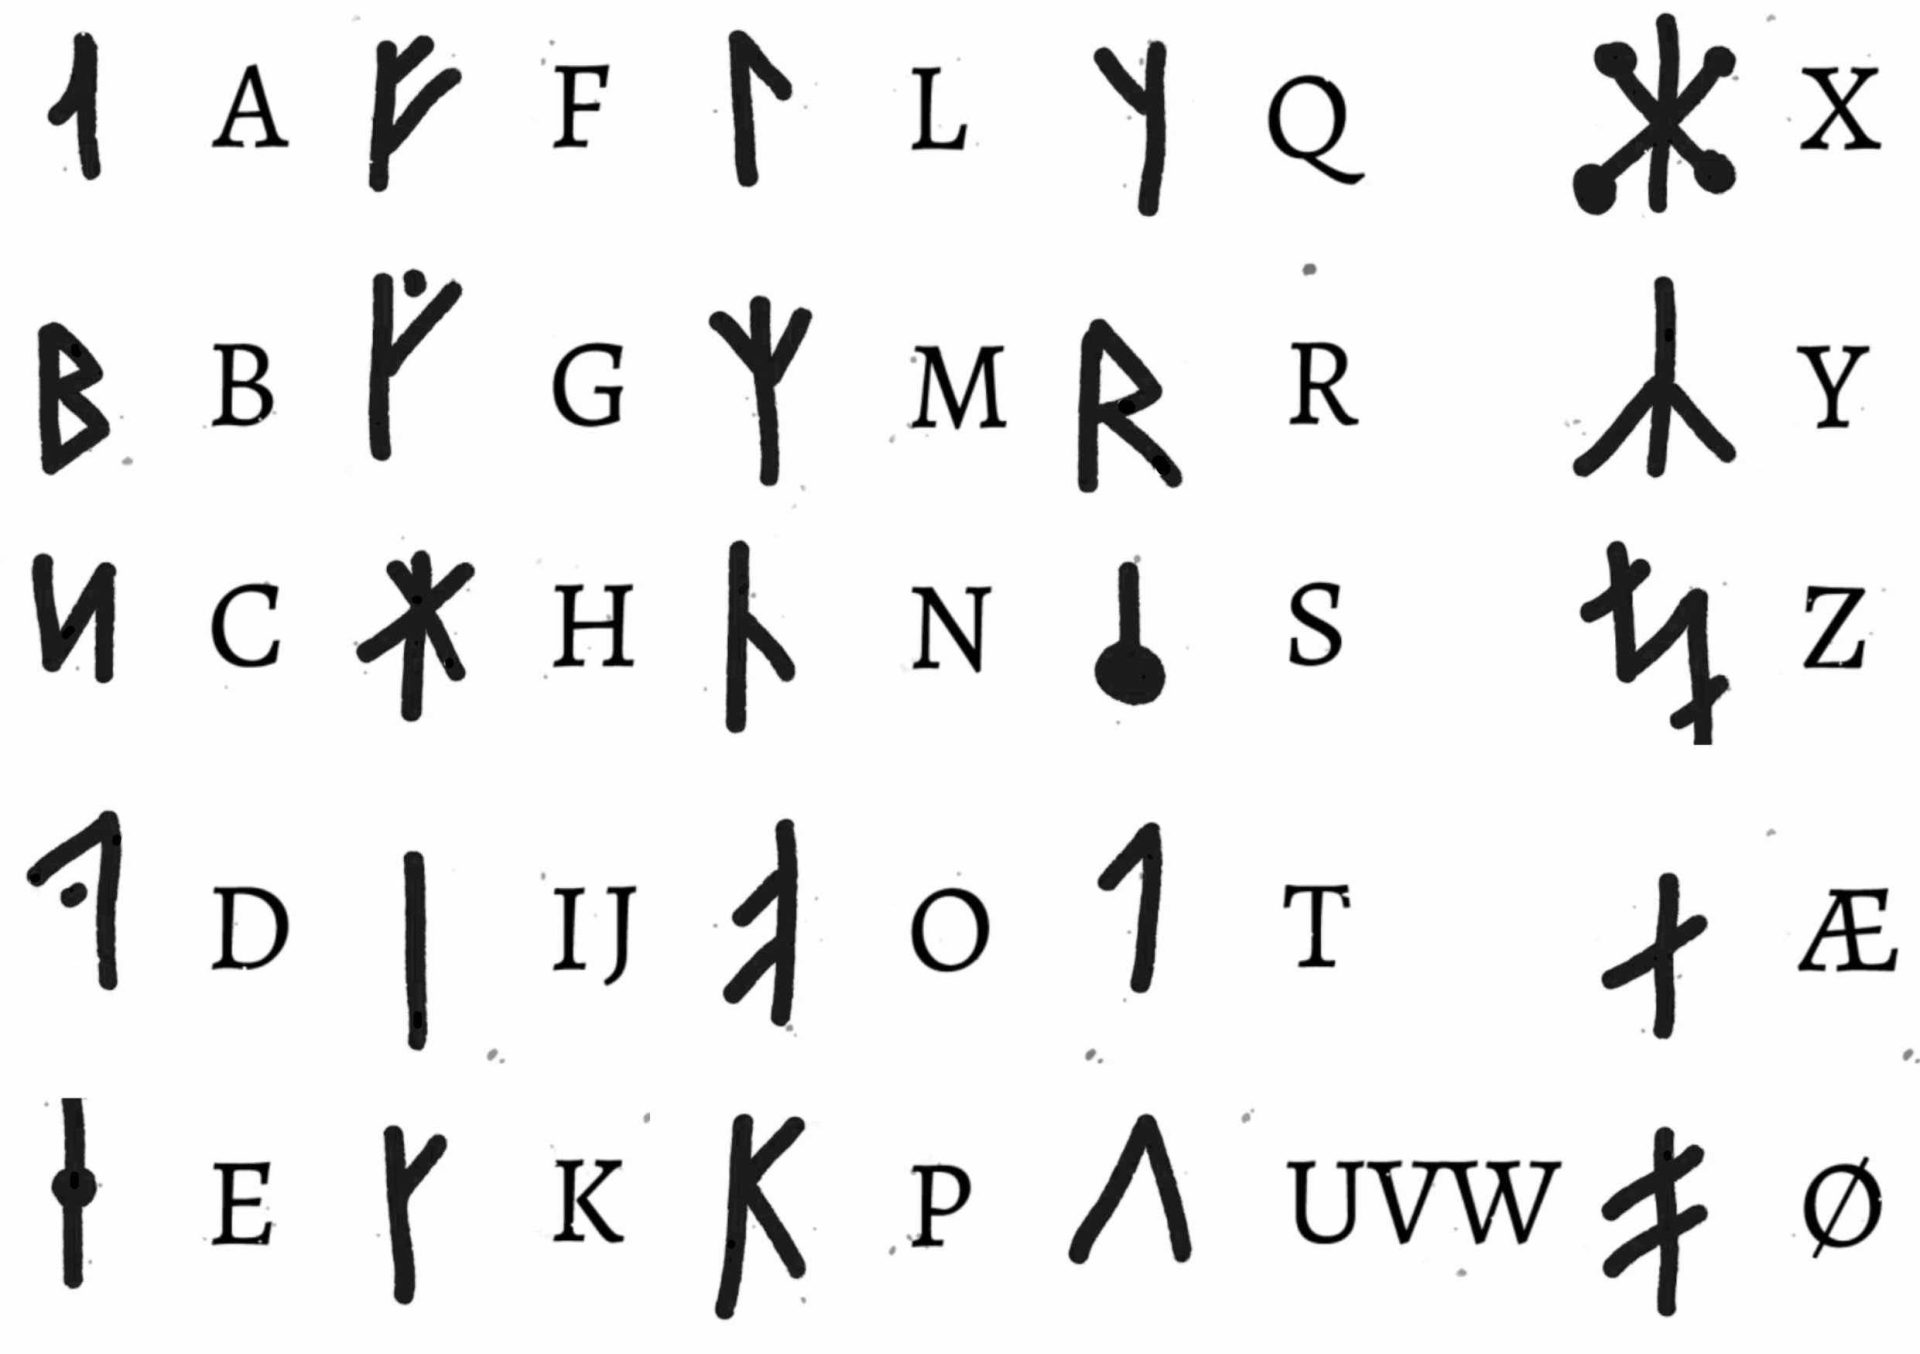 Viking alfabet som fake-tatueringar. Hela vikingaalfabetet